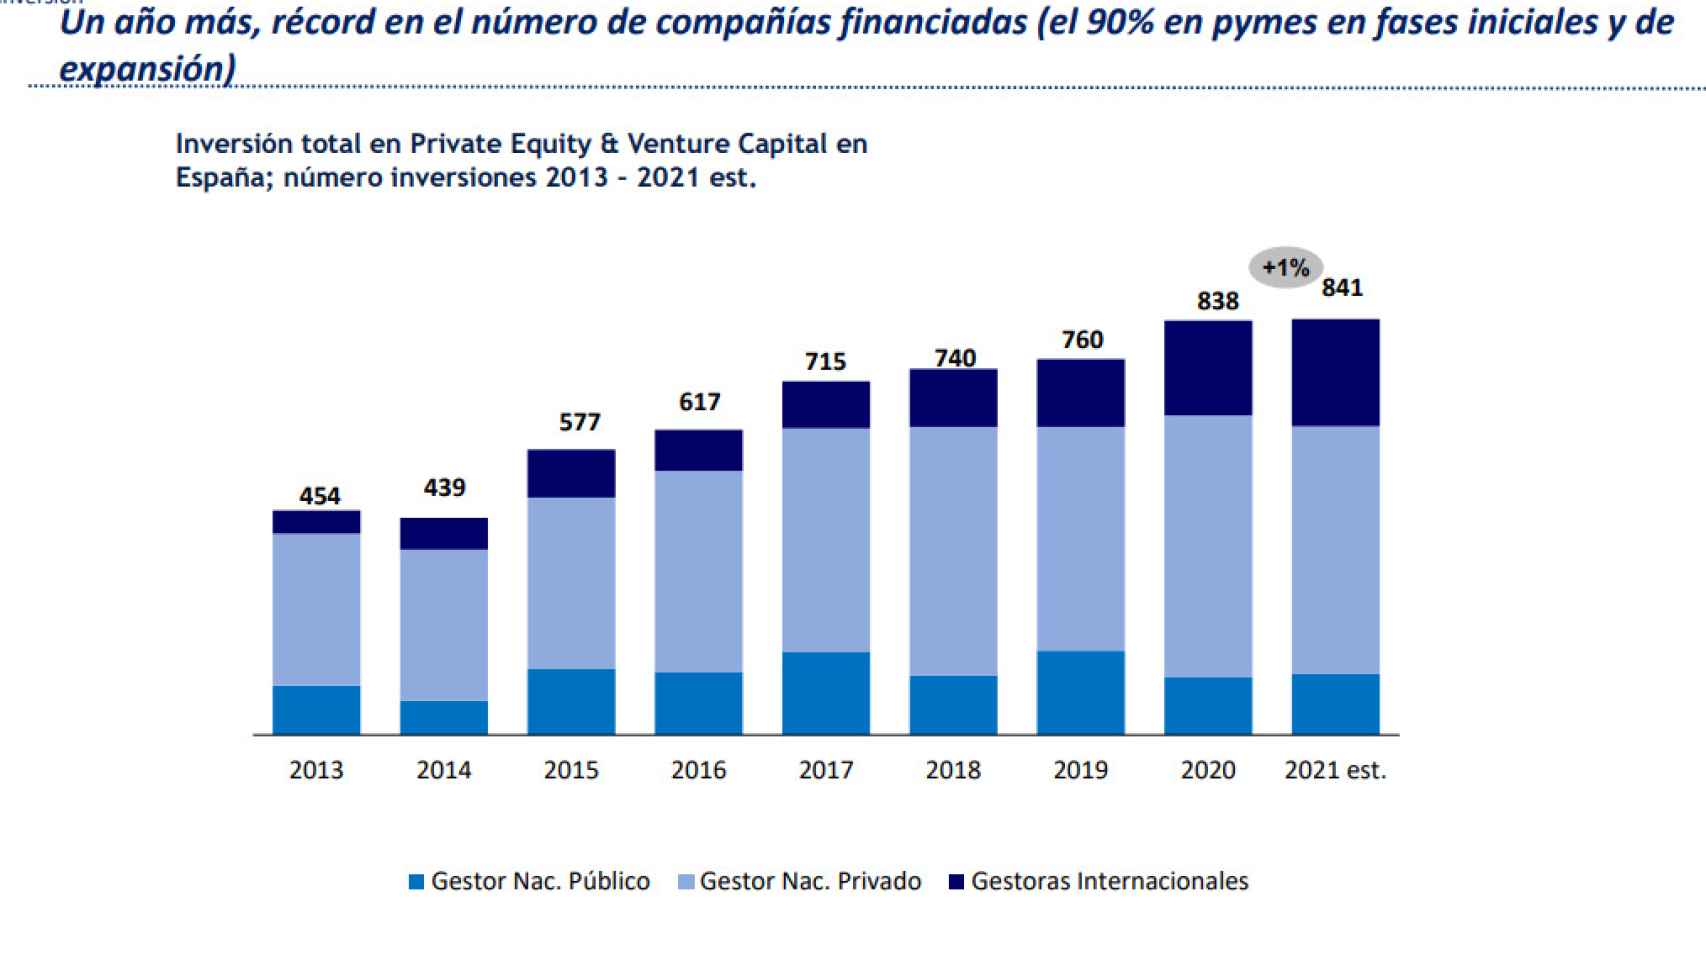 Récord en el número de compañías financiadas, el 90% pymes en fases iniciales y de  expansión